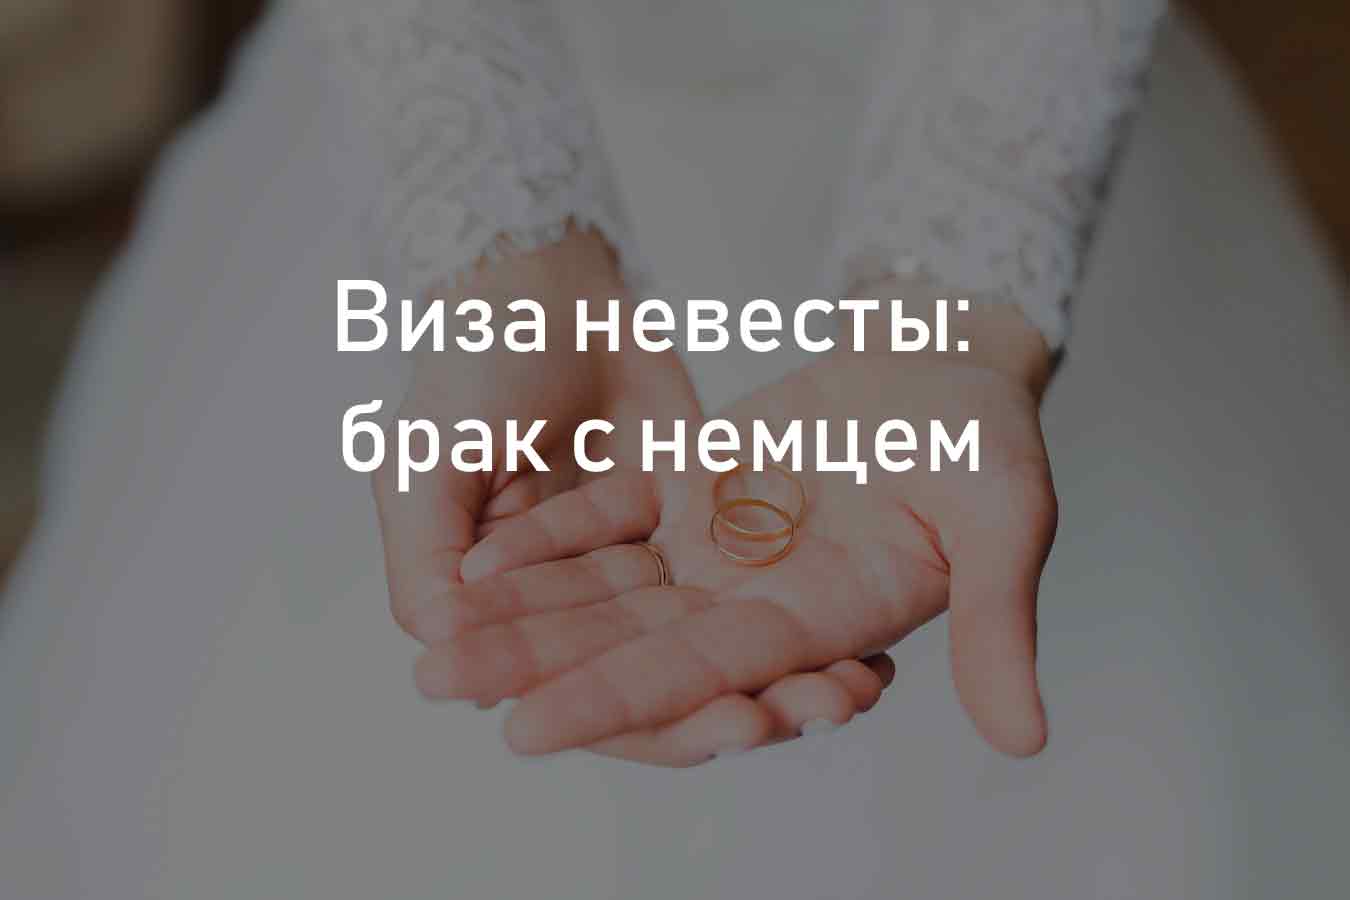 Виза невесты в сша для россиян и украинцев — пошаговая инструкция, как ее получить без отказа в 2020 году